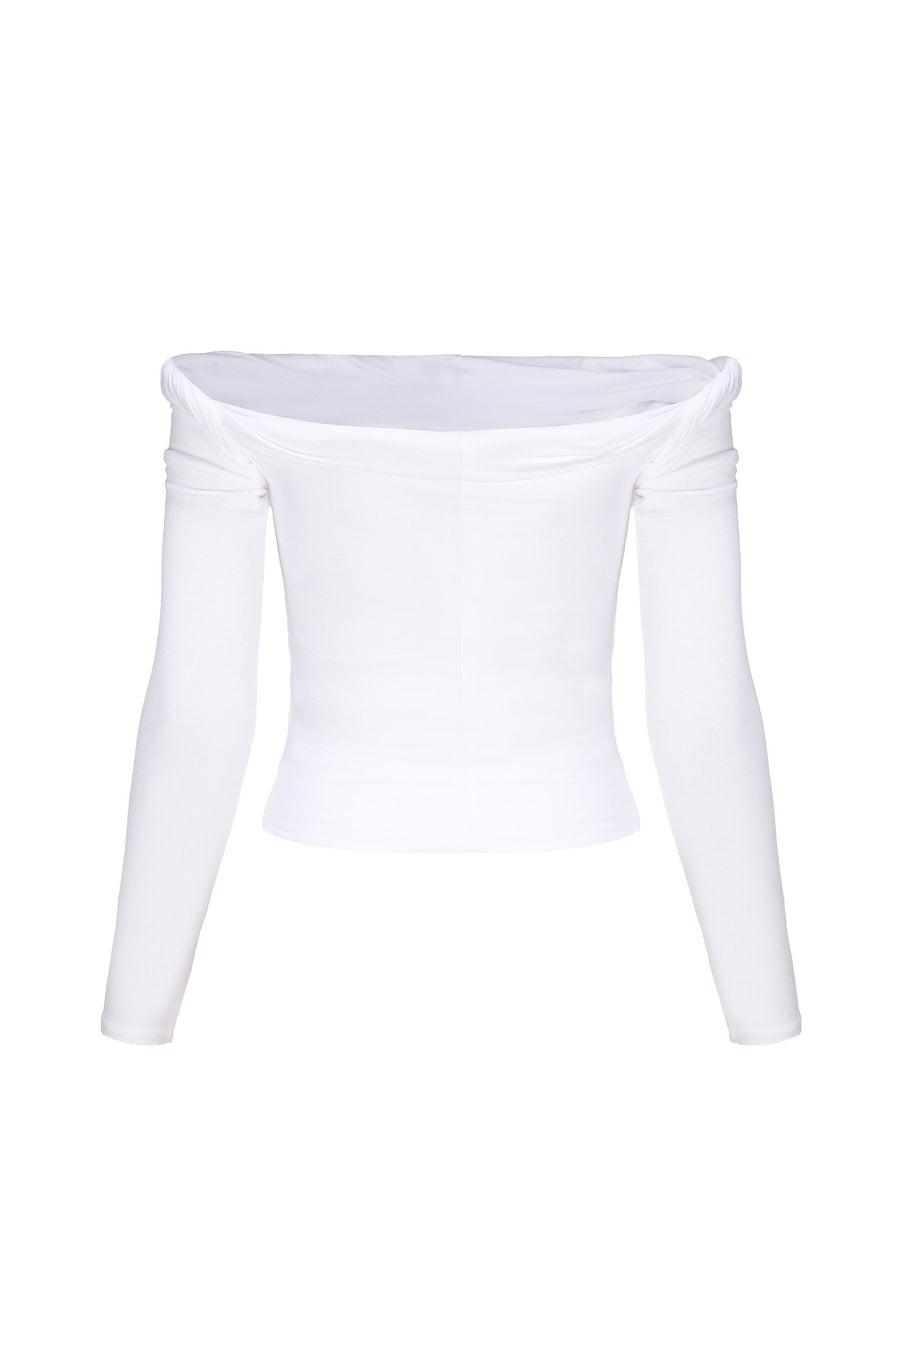 Rebecca Long Sleeve Top - White